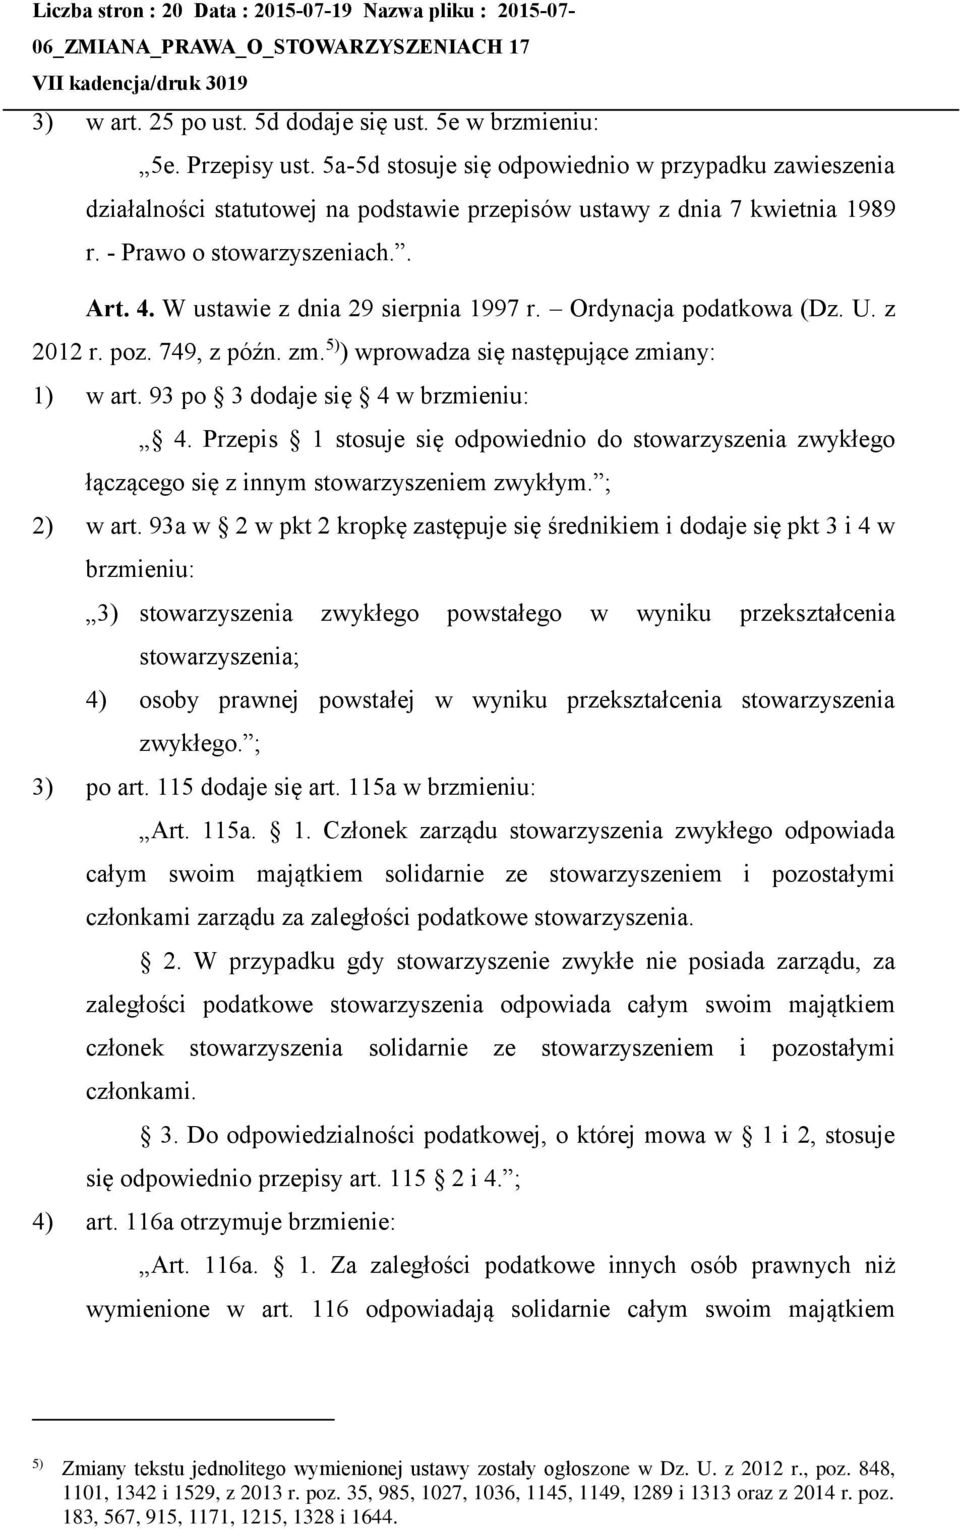 W ustawie z dnia 29 sierpnia 1997 r. Ordynacja podatkowa (Dz. U. z 2012 r. poz. 749, z późn. zm. 5) ) wprowadza się następujące zmiany: 1) w art. 93 po 3 dodaje się 4 w brzmieniu: 4.